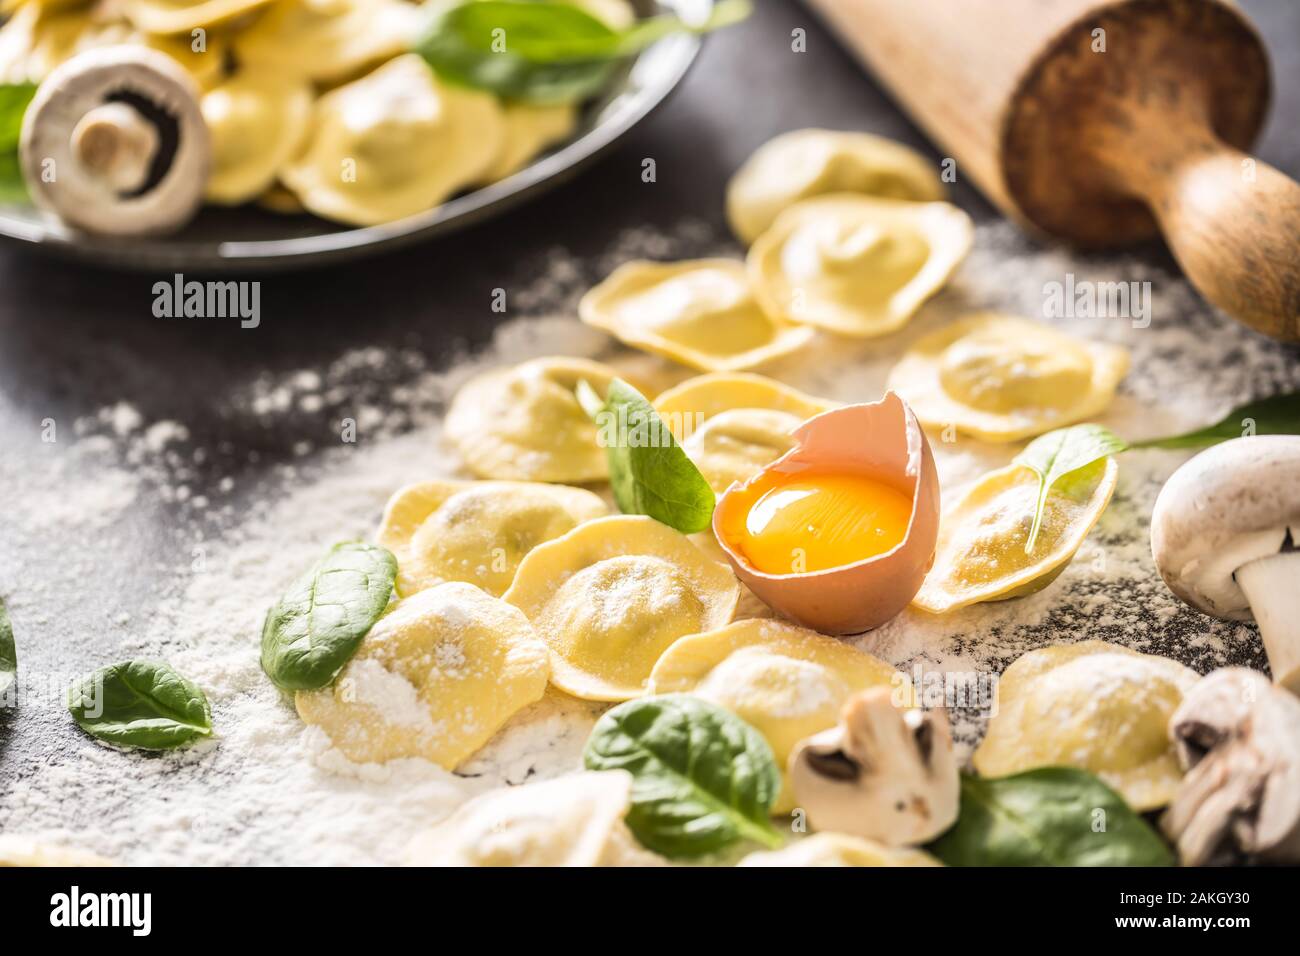 Ravioles crudos con harina huevo musrooms y espinacas. Italiana o mediterránea cocina saludable Foto de stock